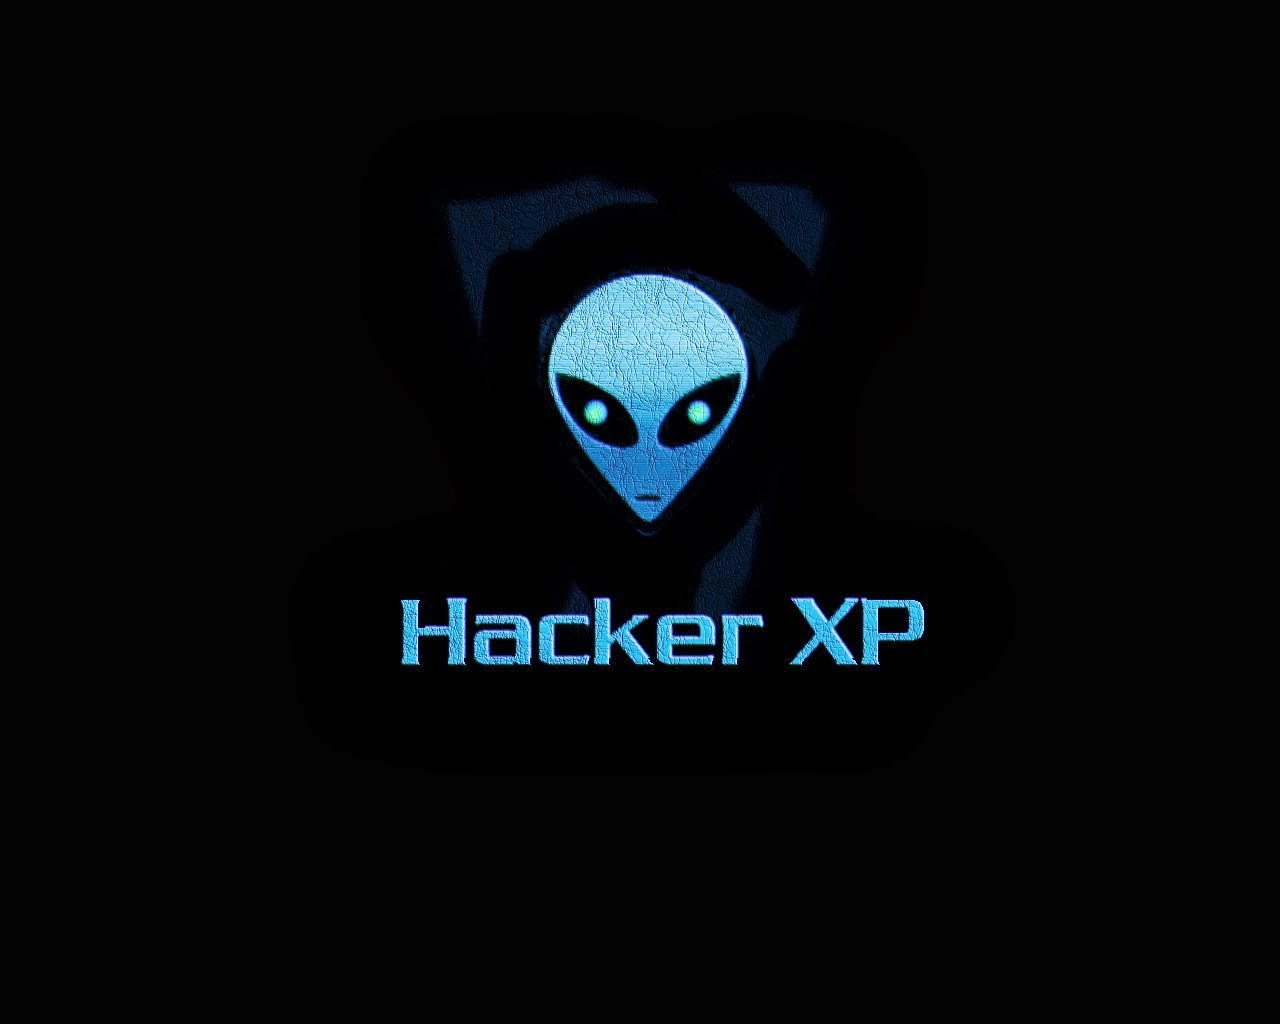 اغلق ثلاث ثغرات خطيره في الإكس بي .. Alien_hacker_xp